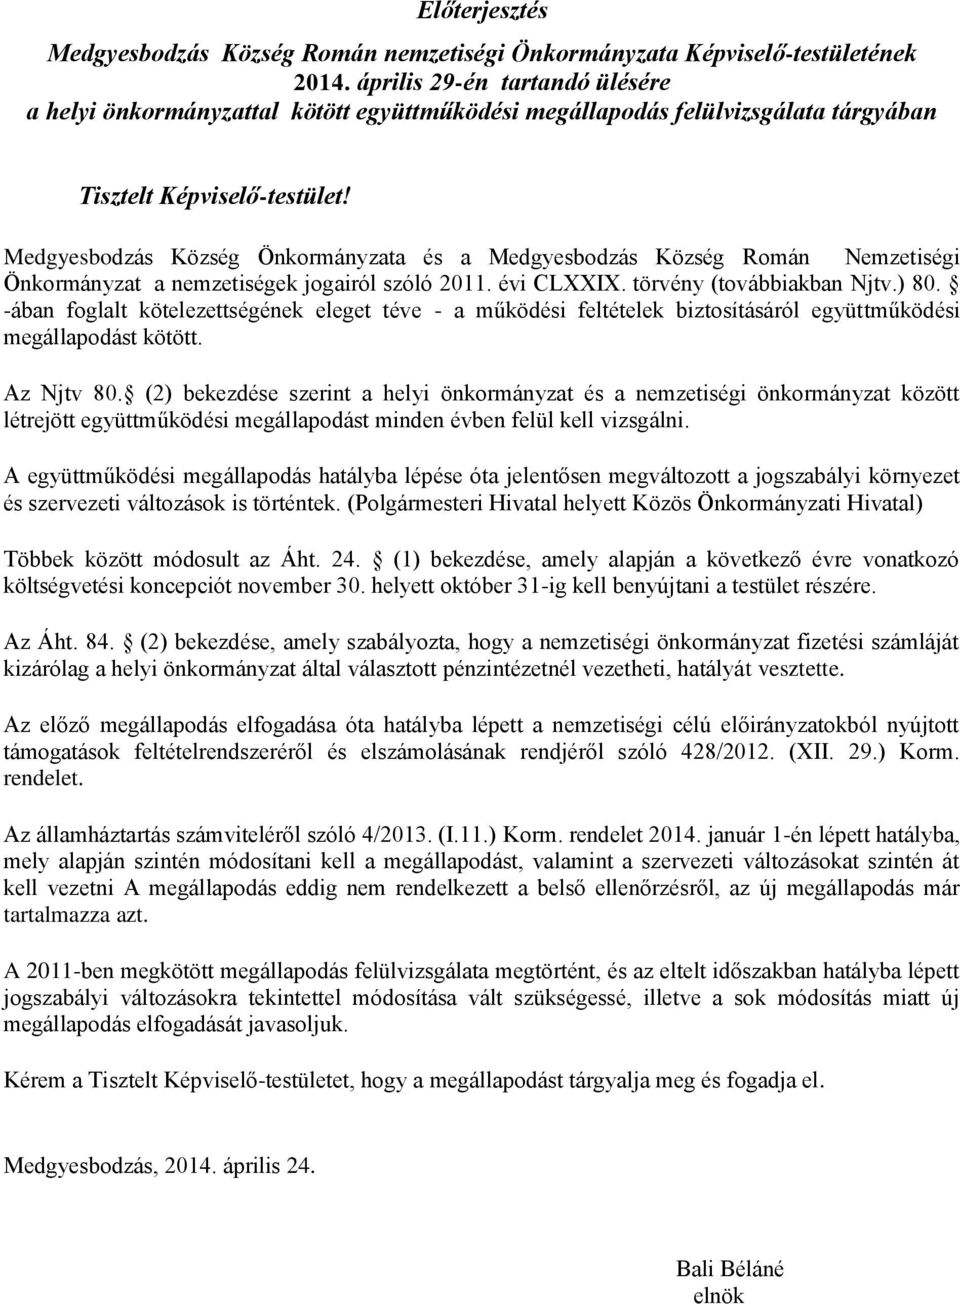 Medgyesbodzás Község Önkormányzata és a Medgyesbodzás Község Román Nemzetiségi Önkormányzat a nemzetiségek jogairól szóló 2011. évi CLXXIX. törvény (továbbiakban Njtv.) 80.